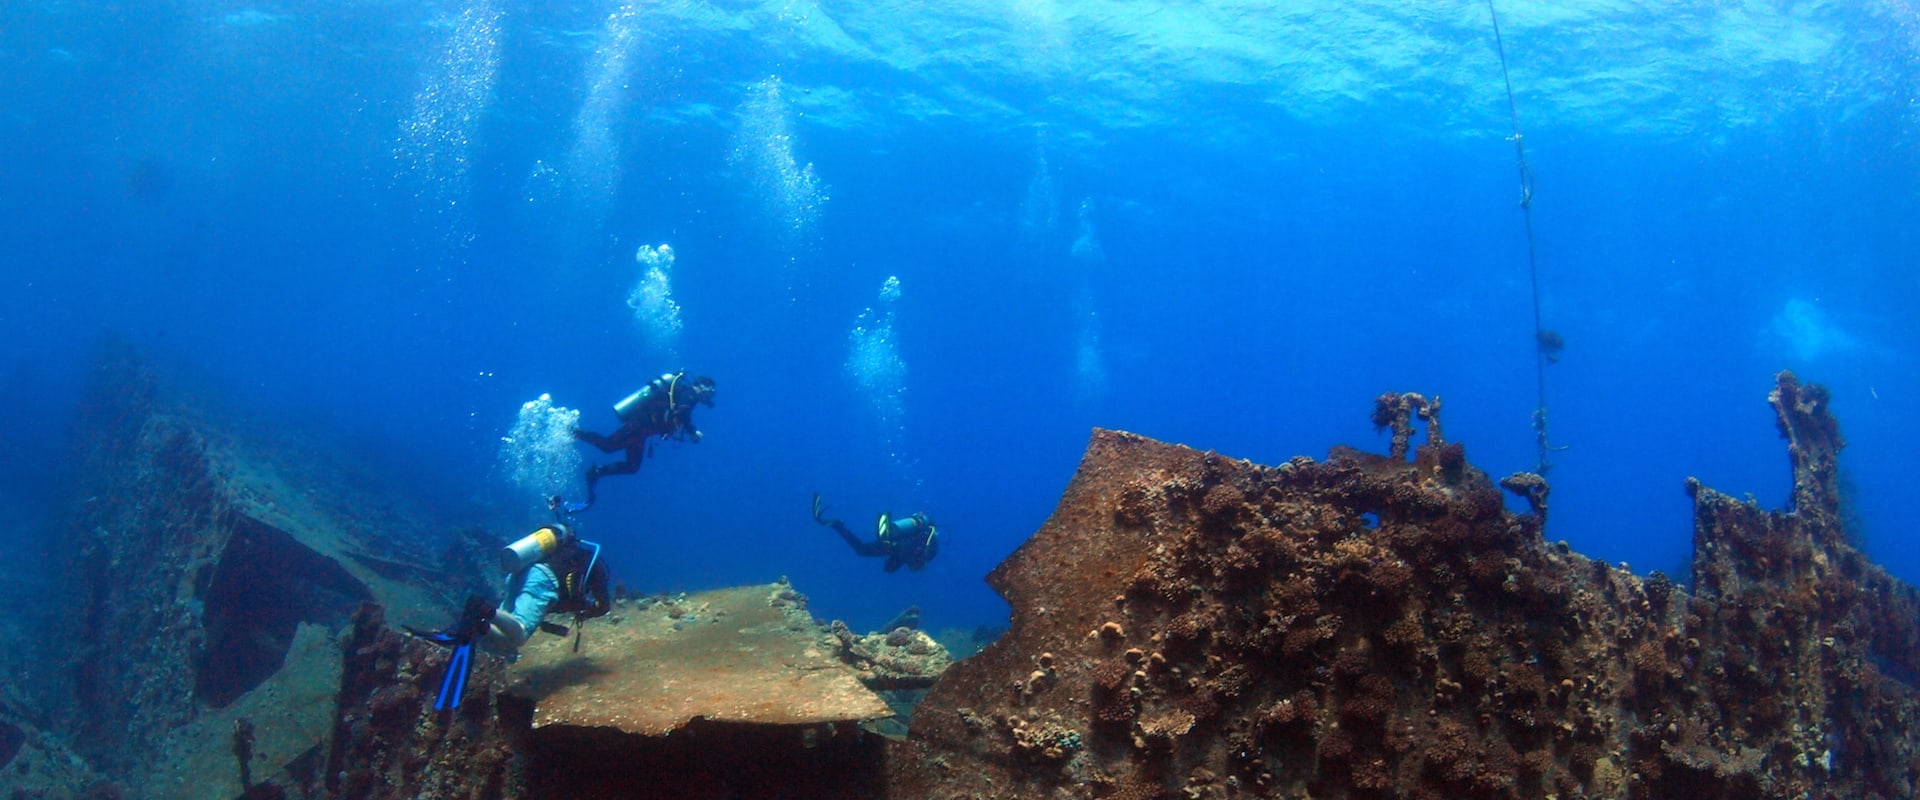 Abu Nuhas Liveaboard Diving